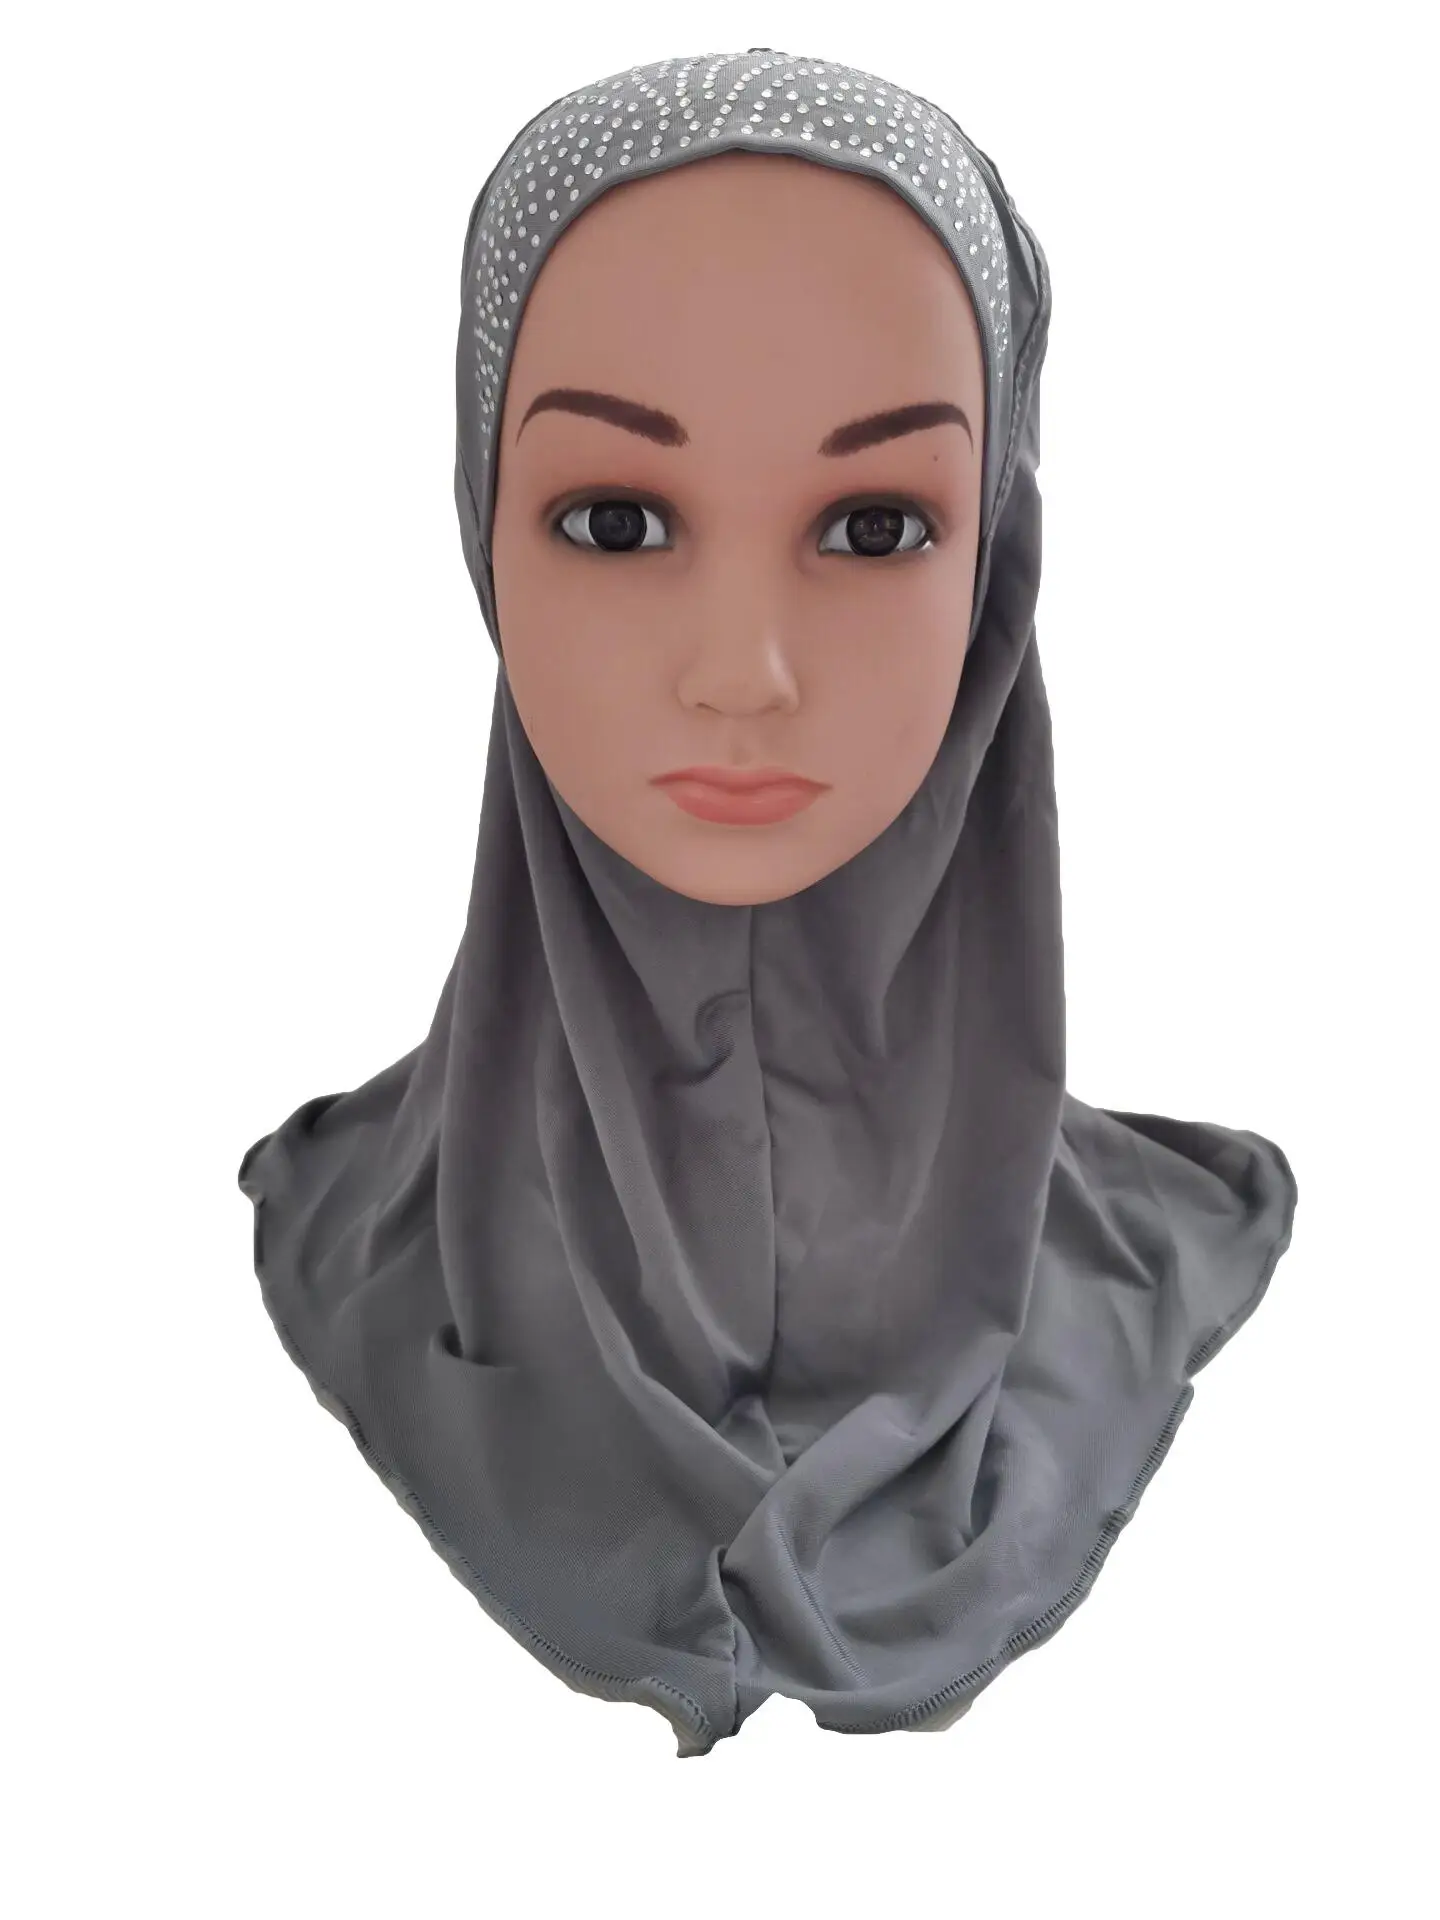 Мусульманские дети хиджаб для девочки Стразы цельный шарф "Амира" шаль исламский платок Арабская шапка Рамадан головной убор шляпа никвабы тюрбан Ближний Восток